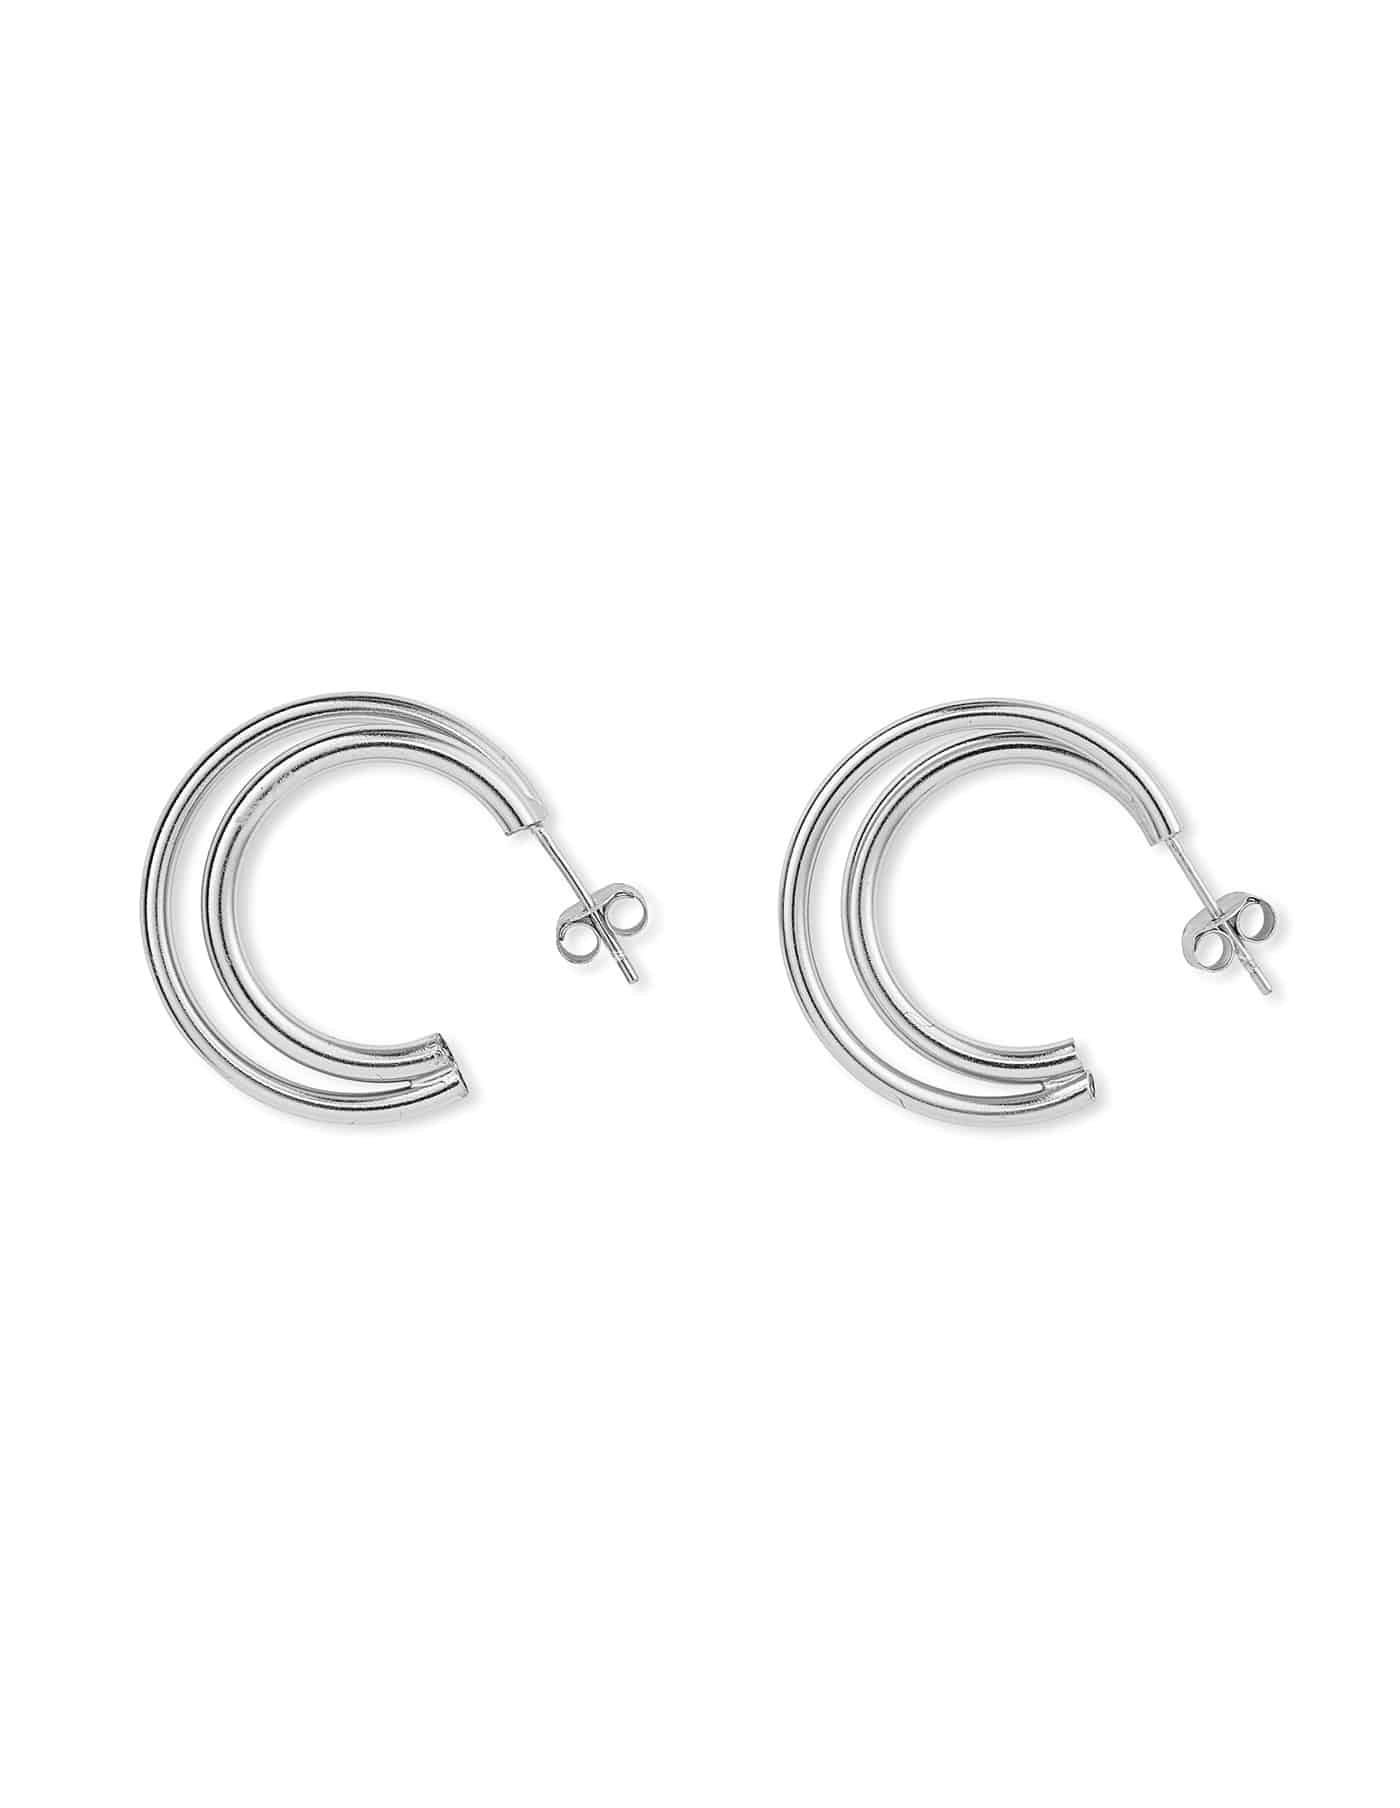 Silver Earrings Double Loop Silver Earrings Sterling Silver Earrings Silver Ring Earrings